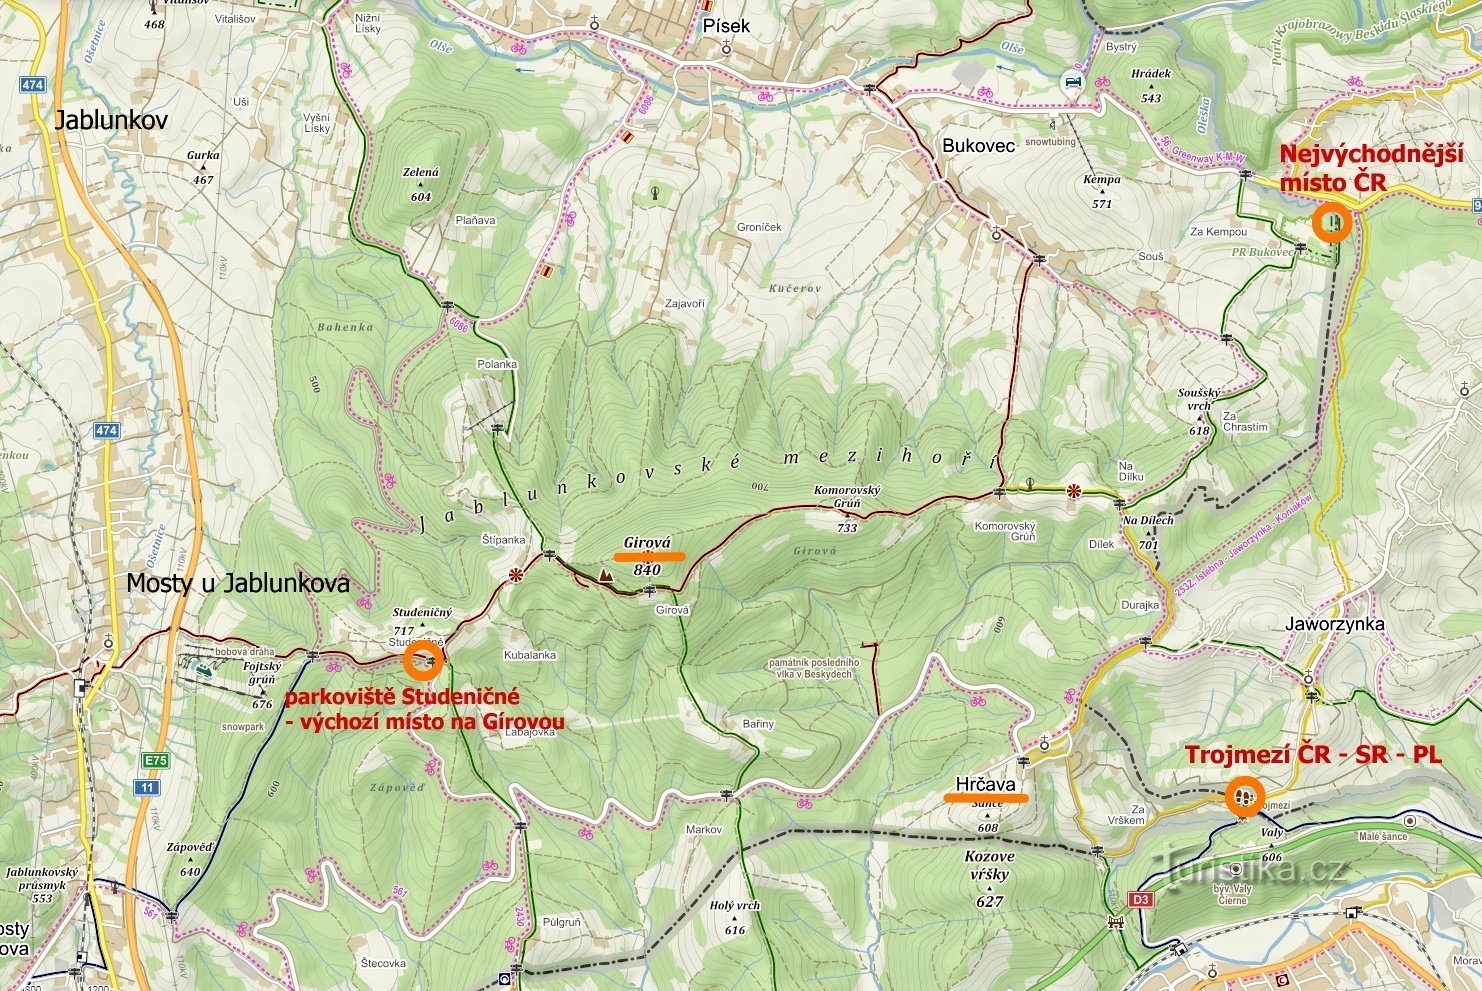 carte des lieux visités : Point le plus oriental de la République tchèque, Hrčava - Trojmezí, Jablunkovské m